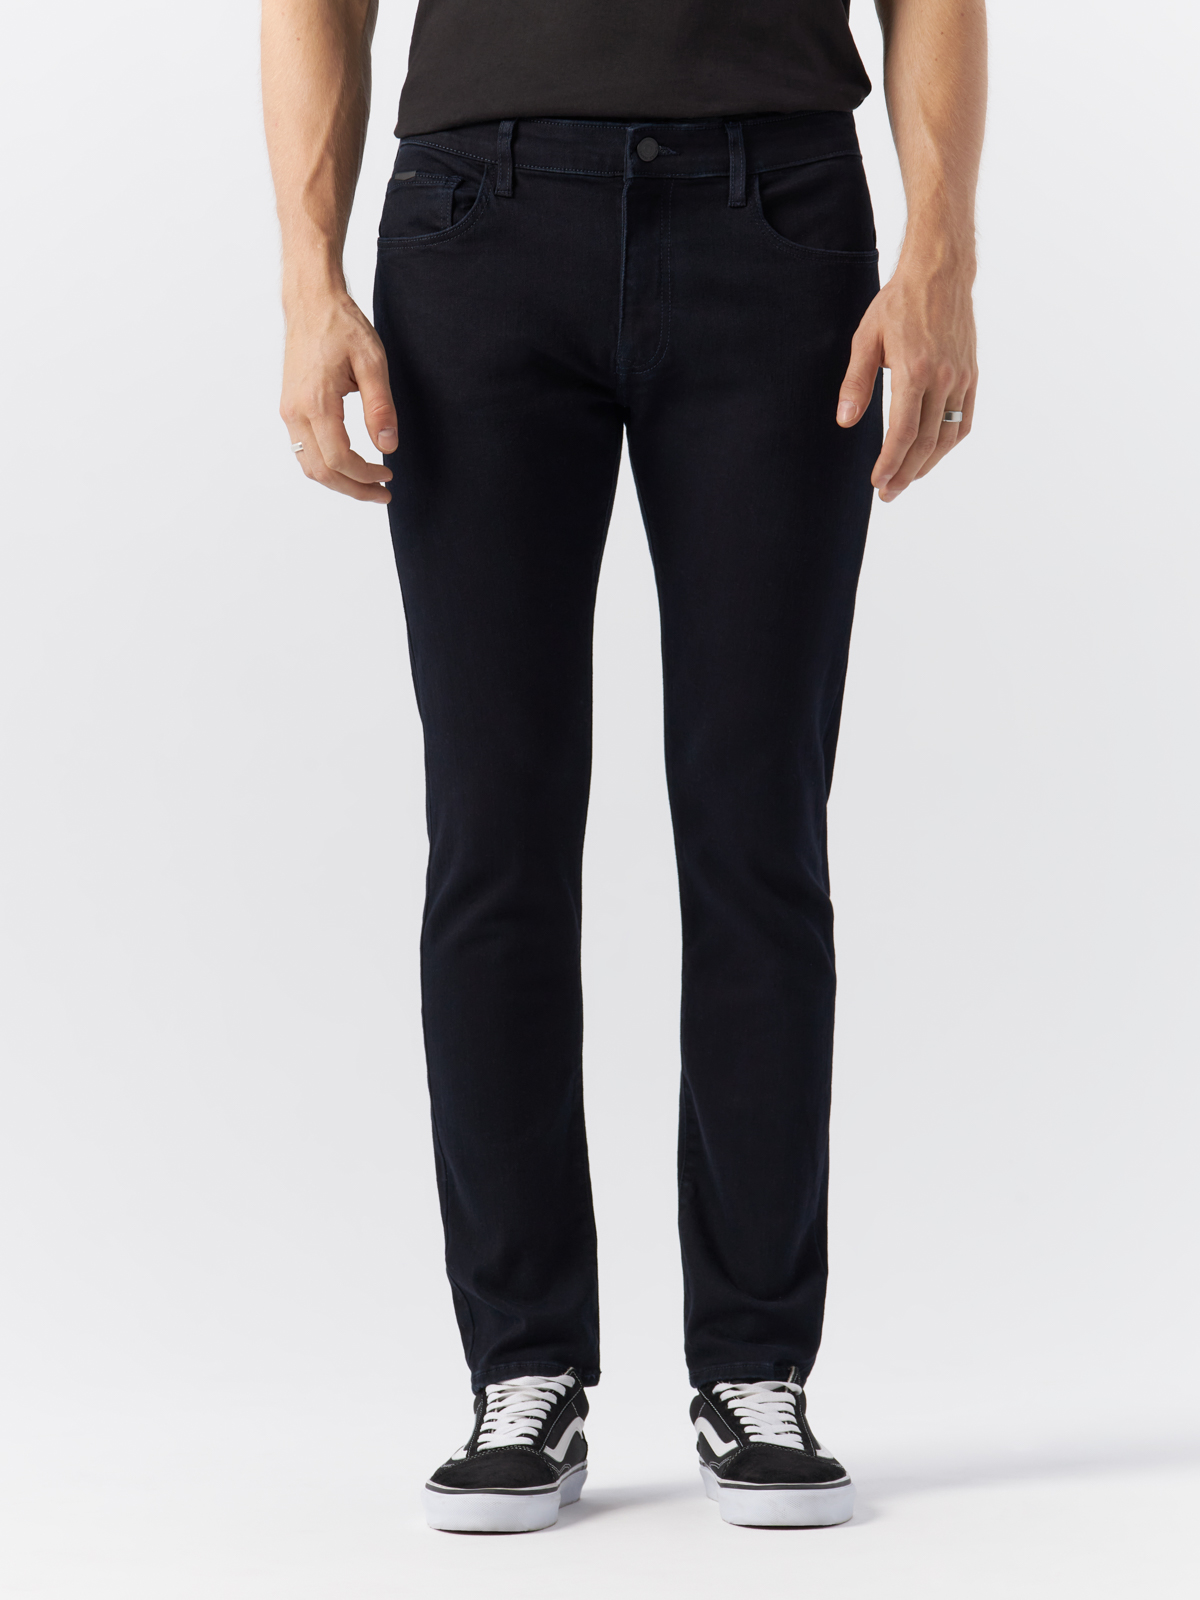 Джинсы Cross Jeans для мужчин, E 185-169, размер 30-30, чёрные